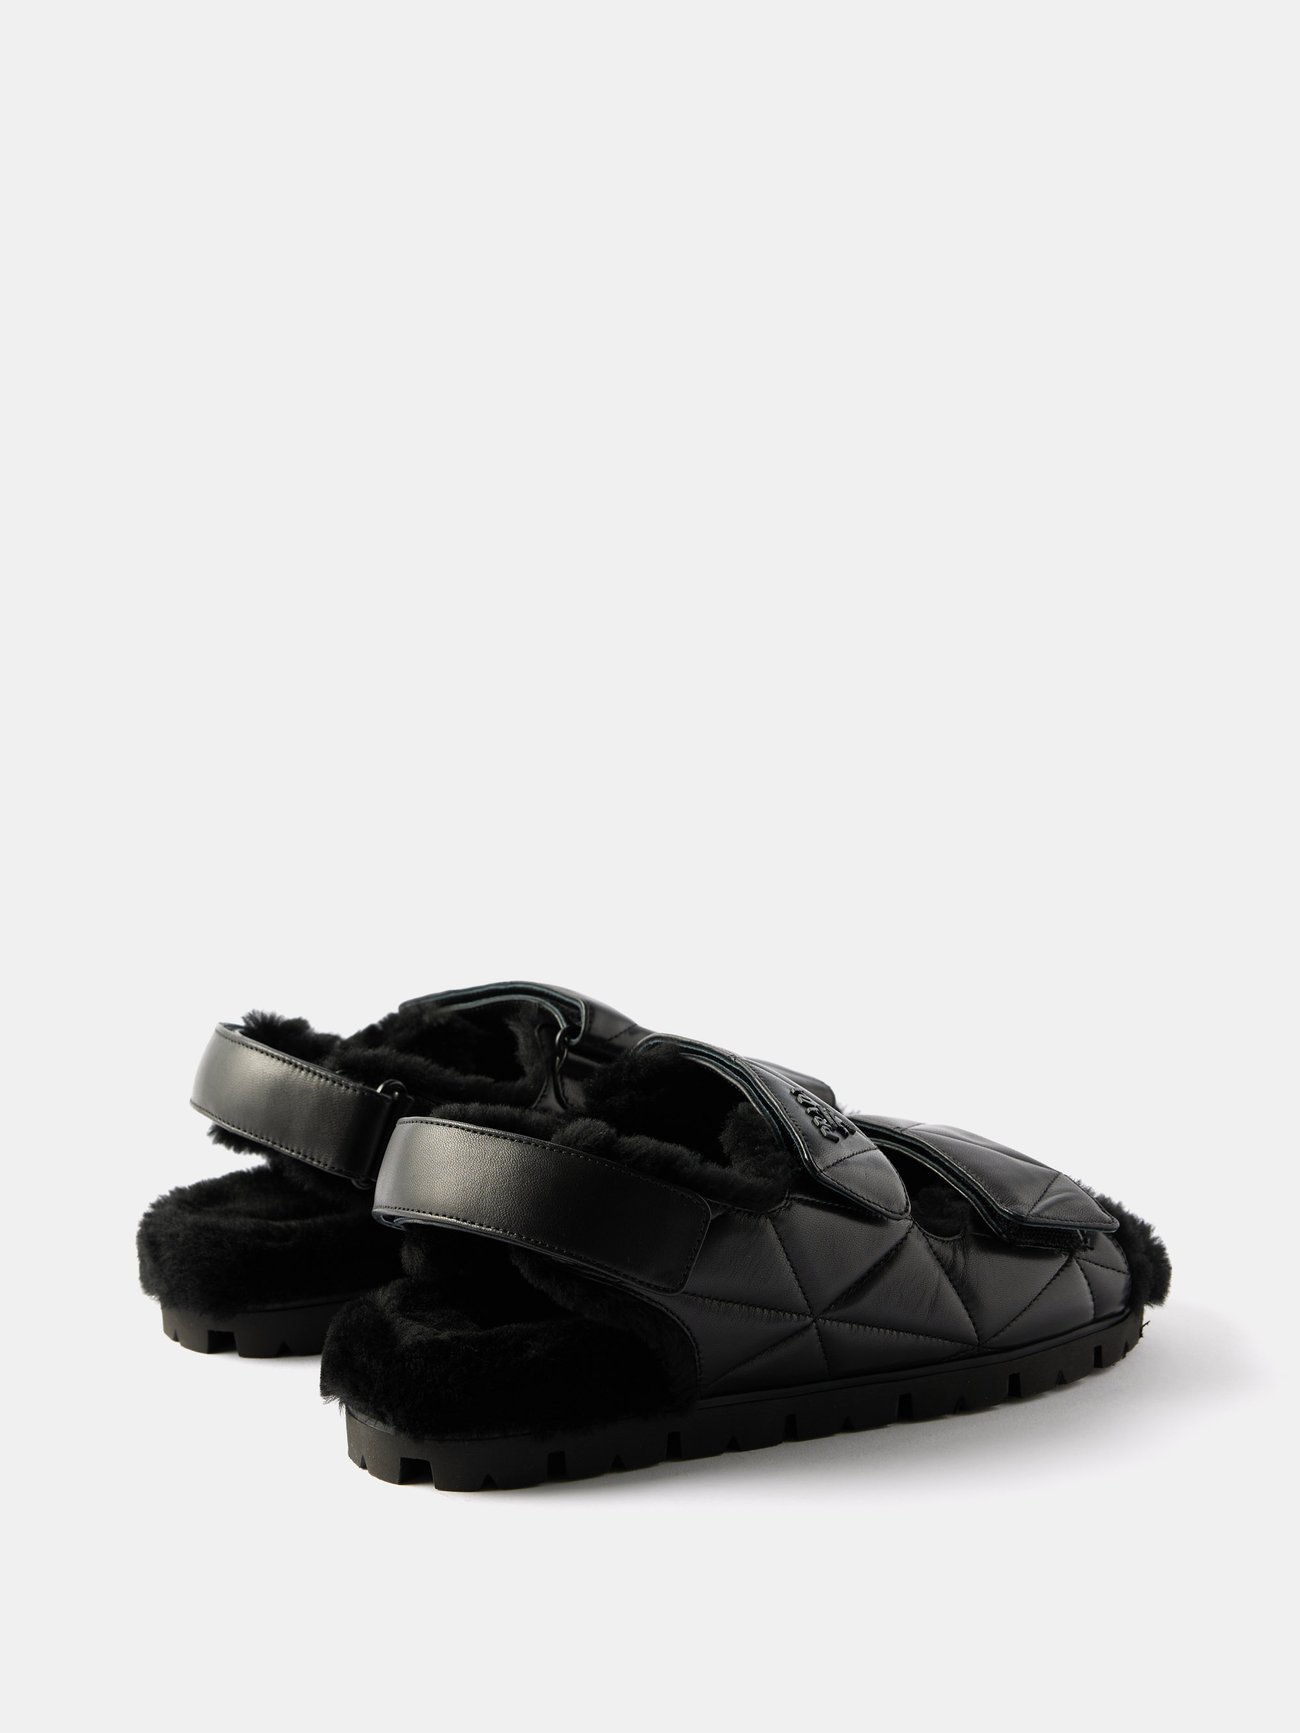 Louis Vuitton Men Criss Cross Leather Slide Flats SIZE 7UK (7.5US)